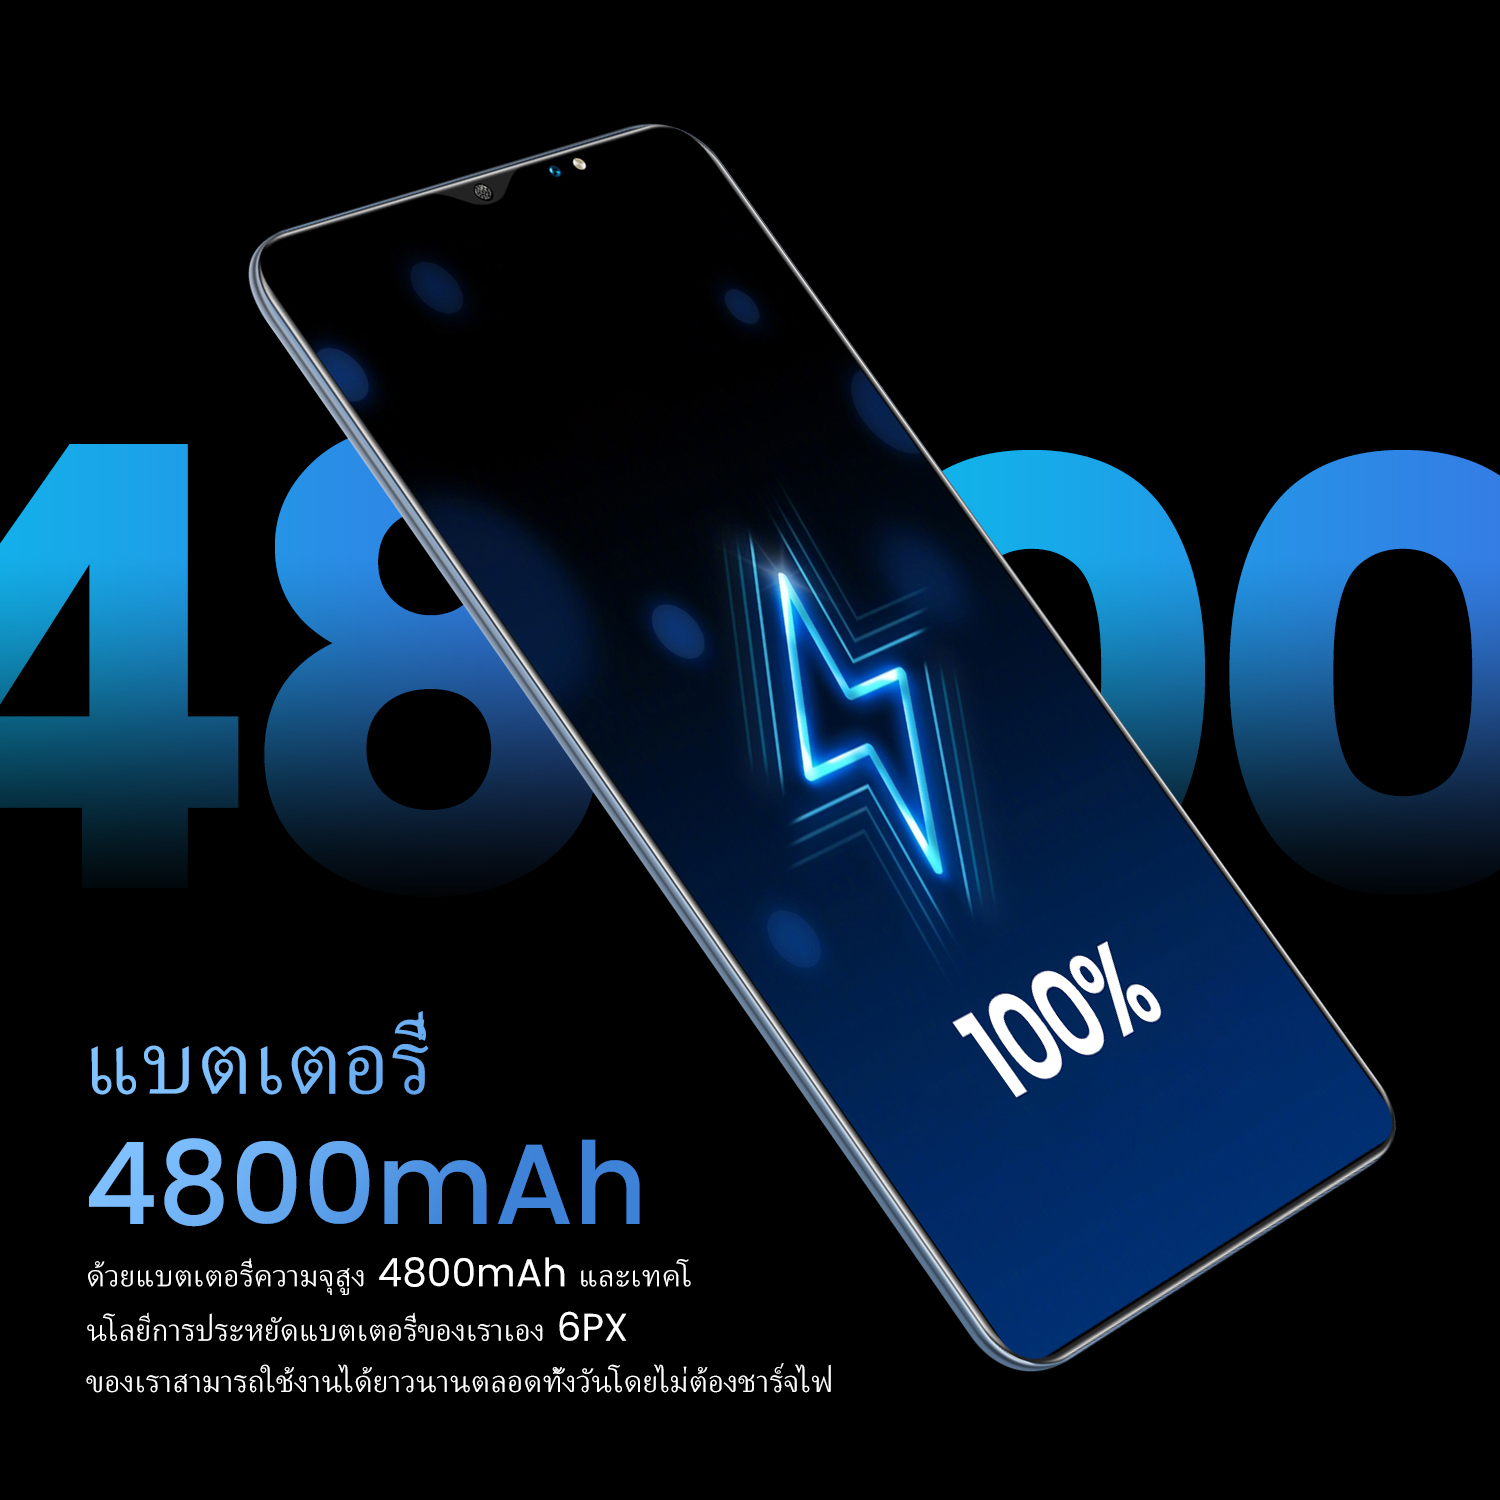 ภาพประกอบคำอธิบาย โทรศัพท์ถูกๆ Sansumg Note30 สมาร์ทโฟน โทรศัพท์ มือถือ 256GB+512GB แรม 12GB หน้าจอ 7.5/5.5นิ้ว Full HD กล้องหน้า 24MPกล้องหลัง48MP แบต 4800 mAh รองรับทุกซิม เมณูภาษาไทย